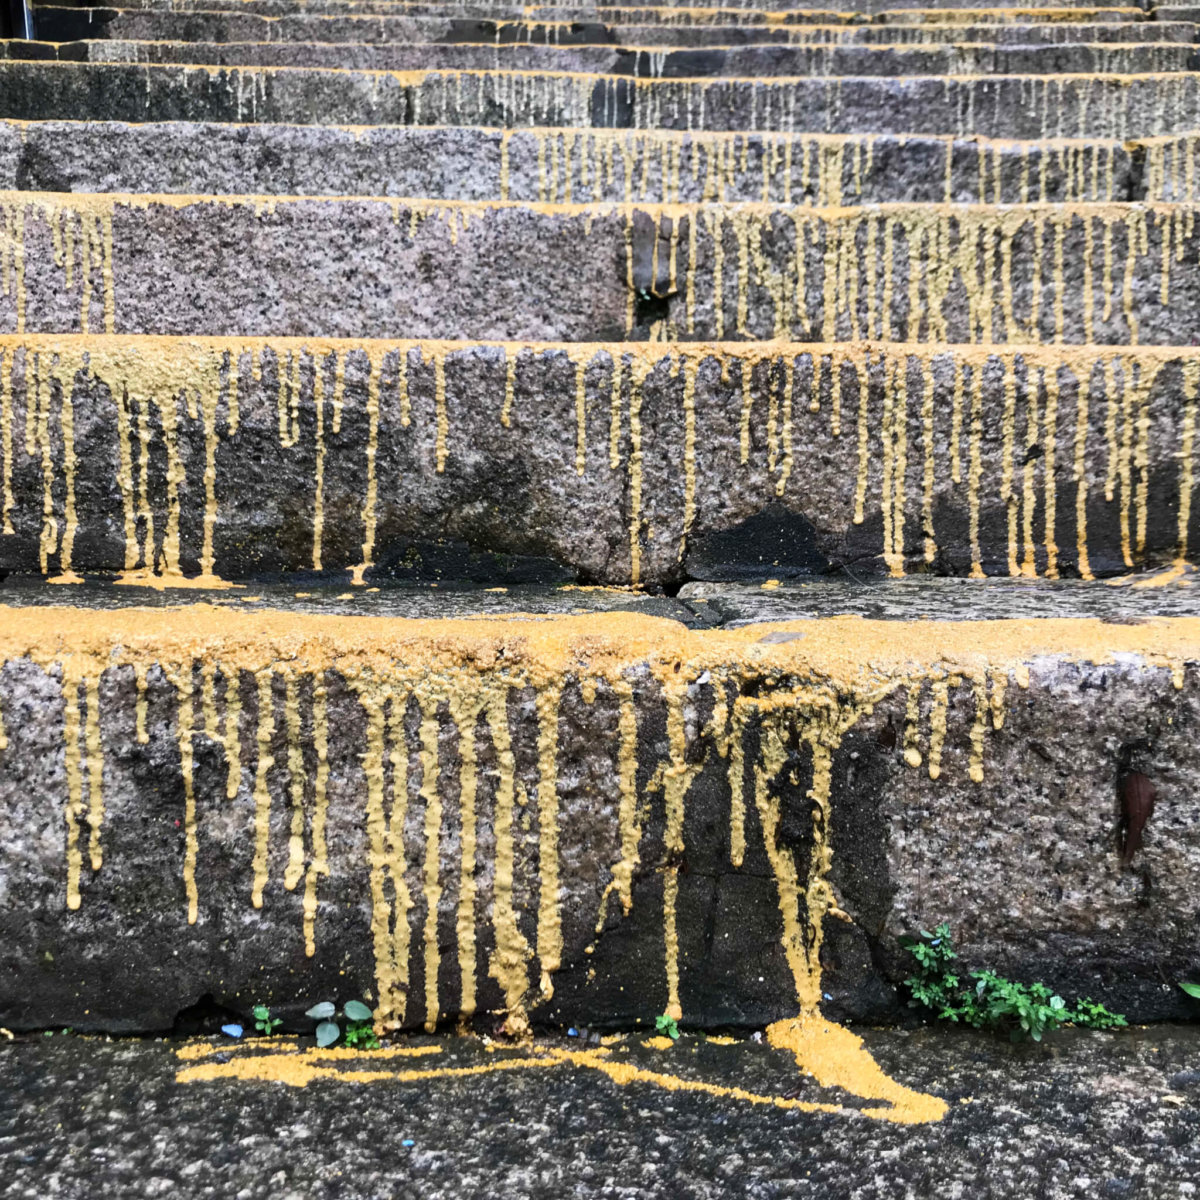 百年花崗石梯遭路政署淋上「防滑黃色鋼砂」，被批損害古物和造工粗劣，近期當局每日清理三級樓梯。